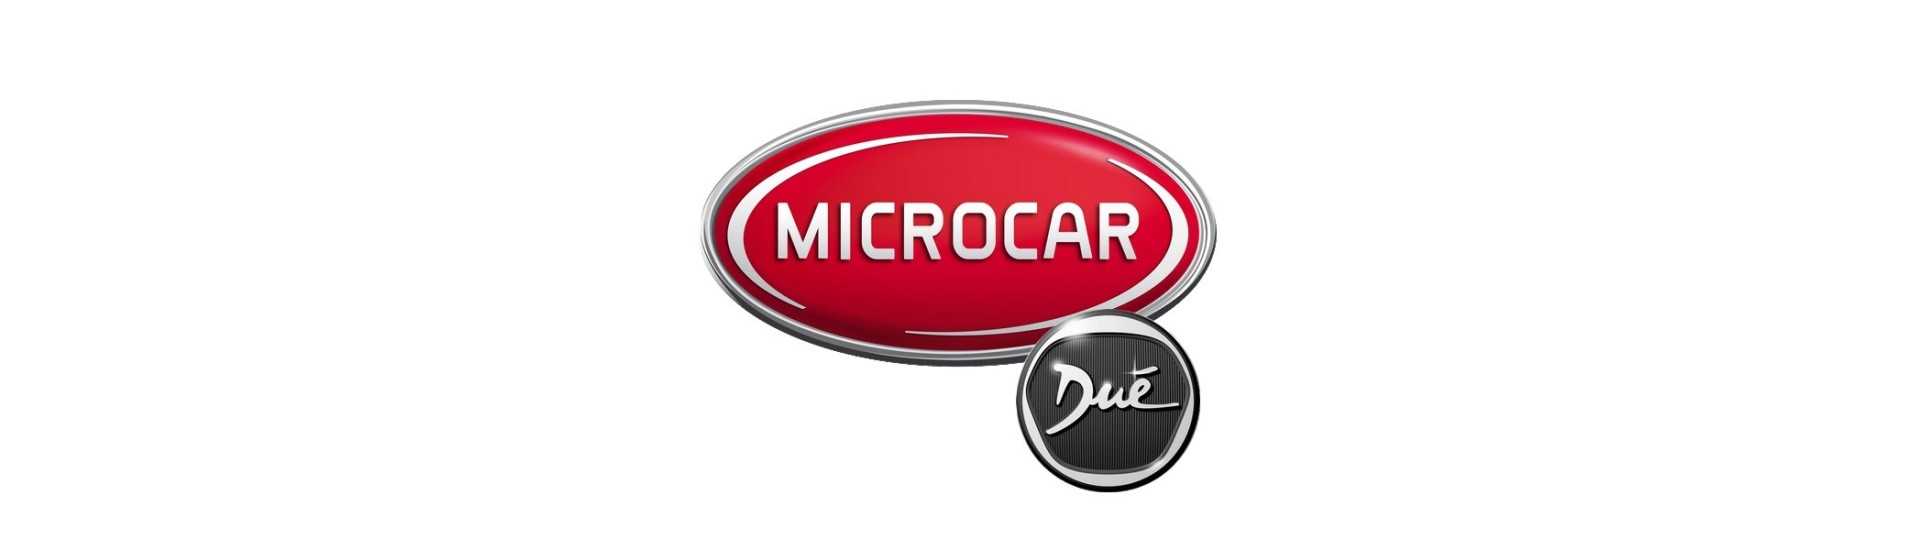 Parhaan auton rikkominen ilman lupaa Microcar Dué